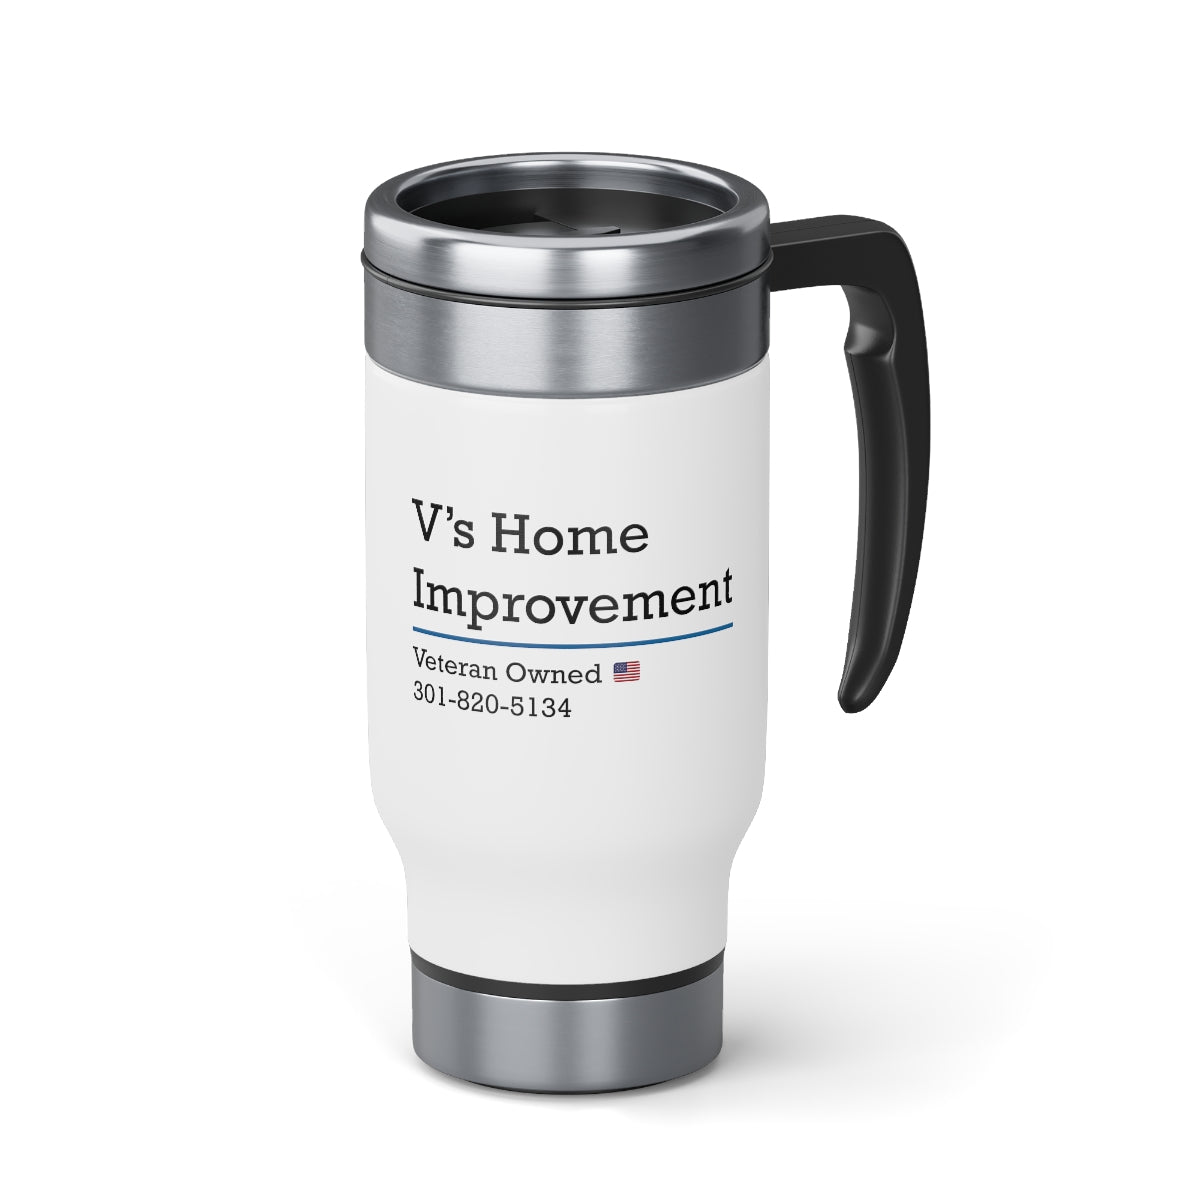 V's Home Improvement Stainless Steel Travel Mug